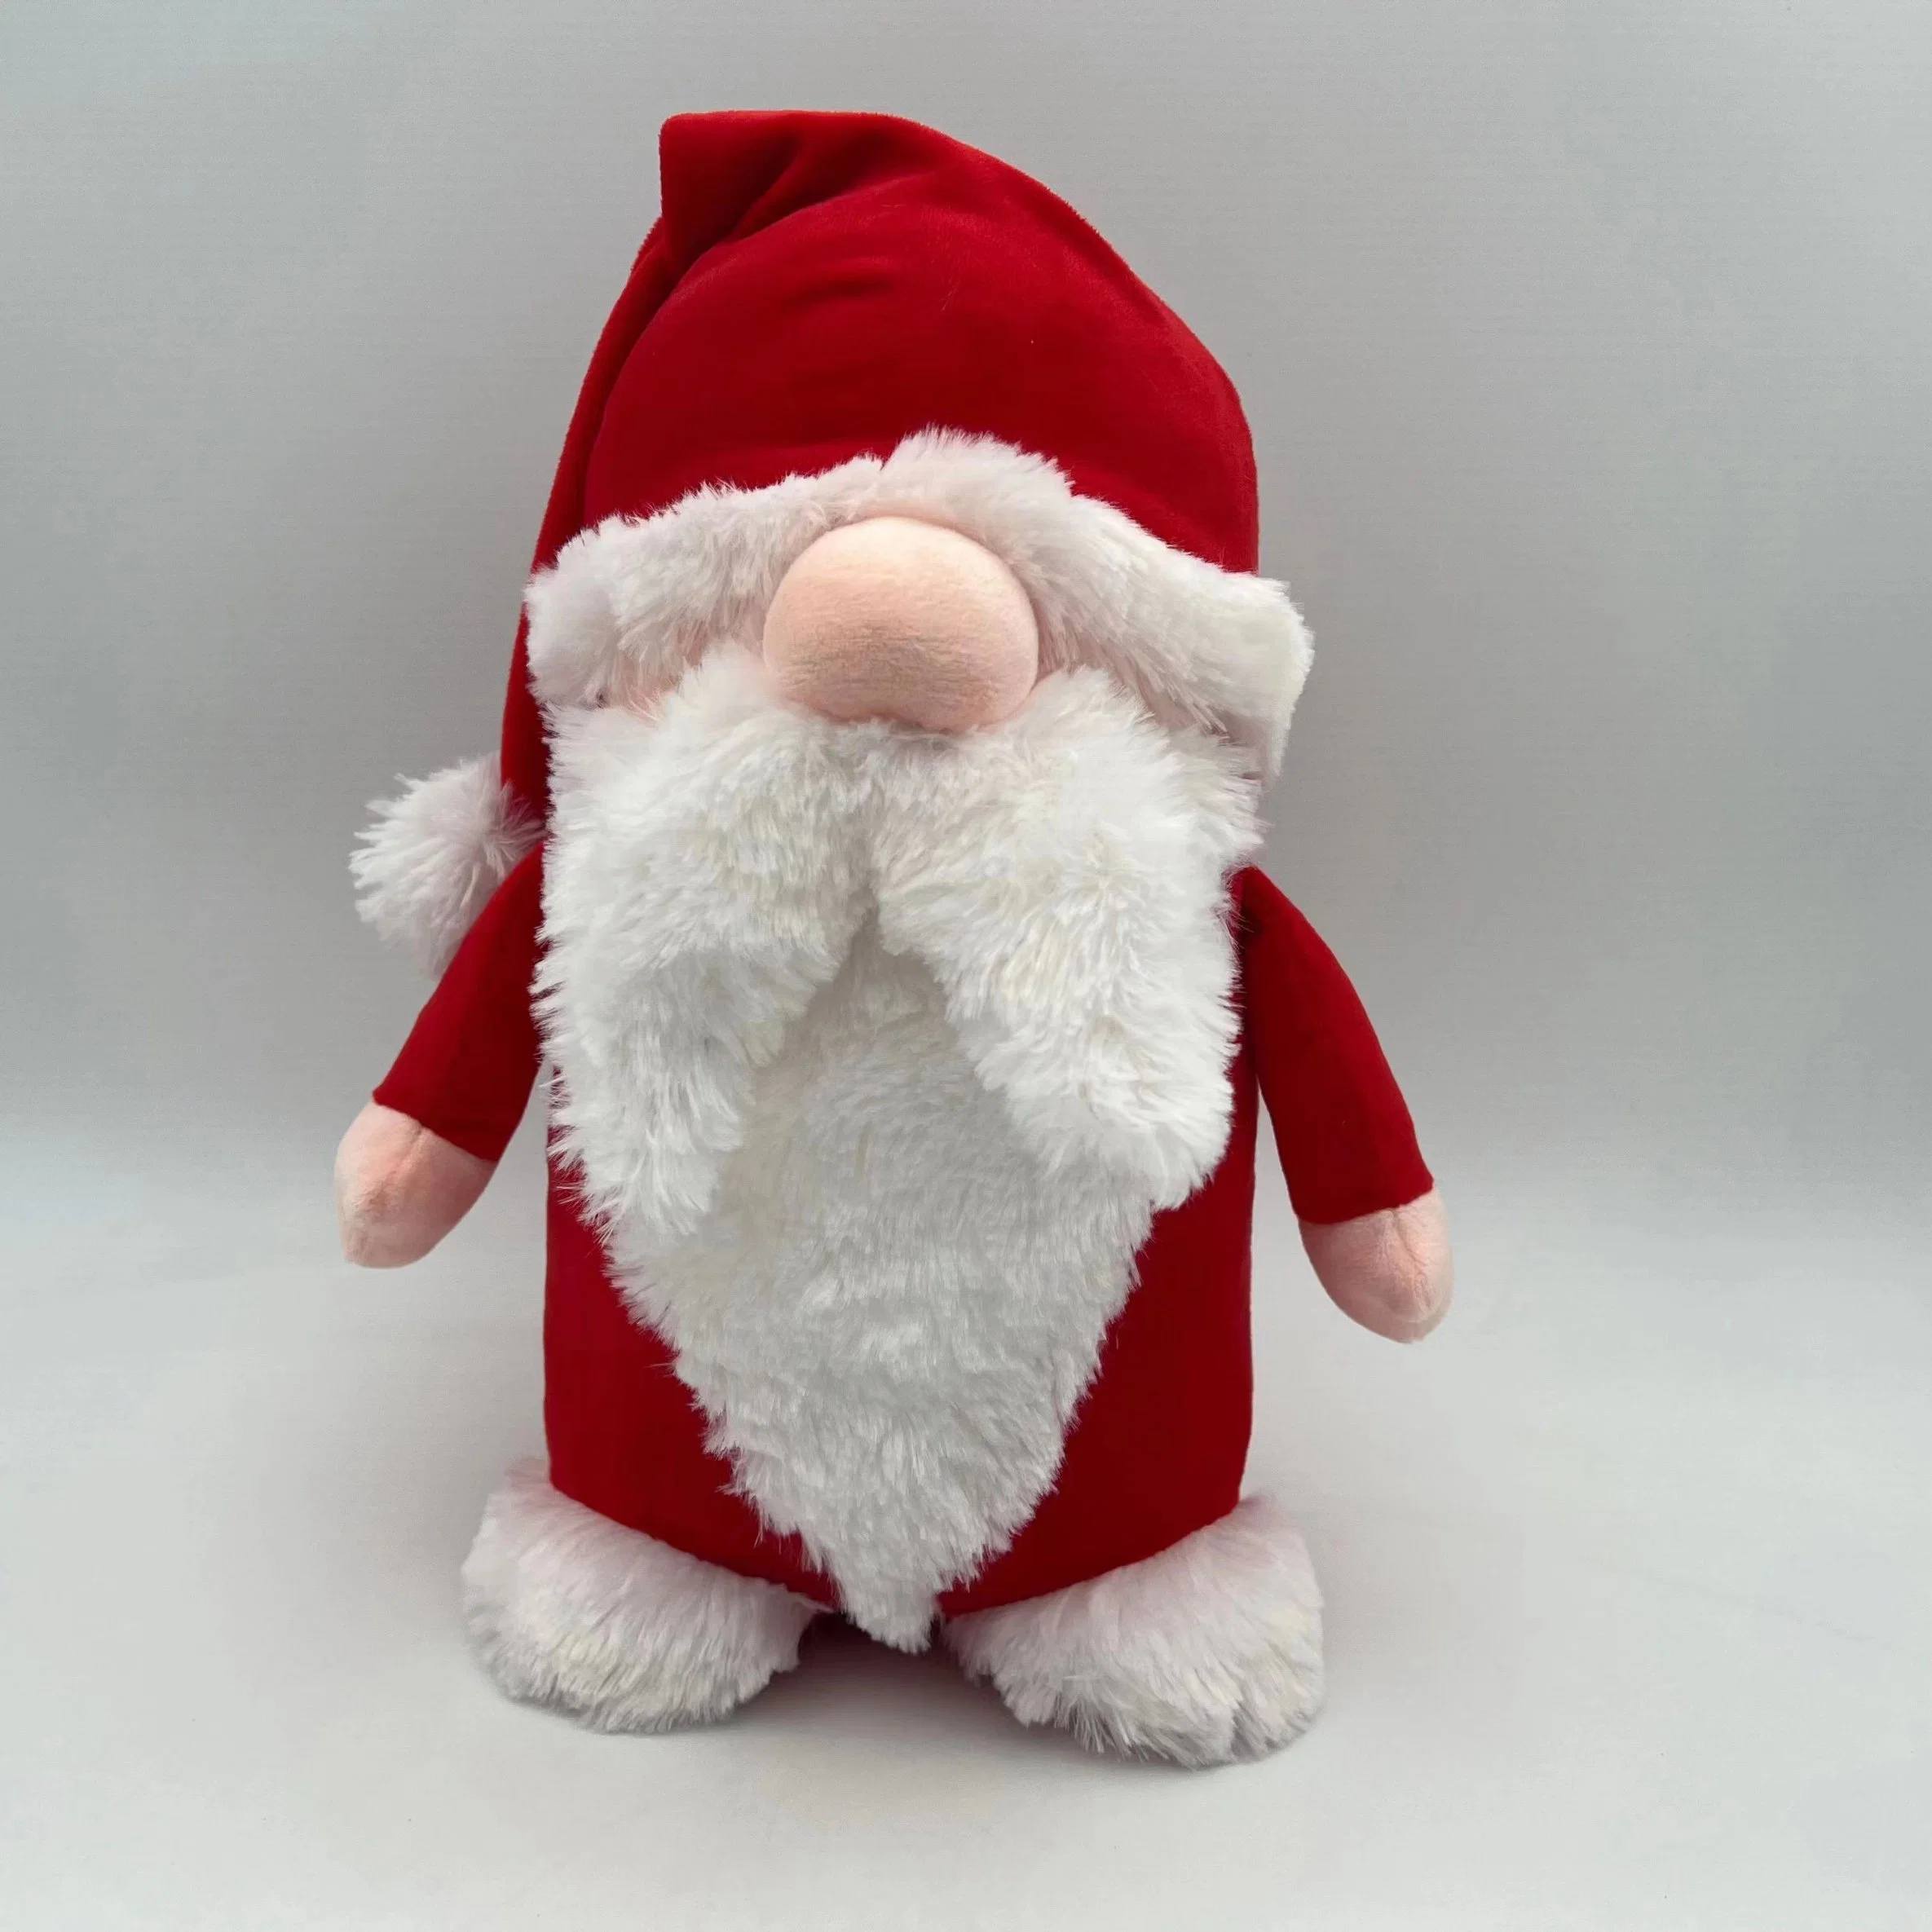 OEM-мягкие игрушки Санта Клаус/ фаршированные игрушки в день Рождества/ зона отдыха с Санта Клаусом игрушки/ Мягкая Плюшевая Санта Рождество/ рождественских подарков мягкие игрушки